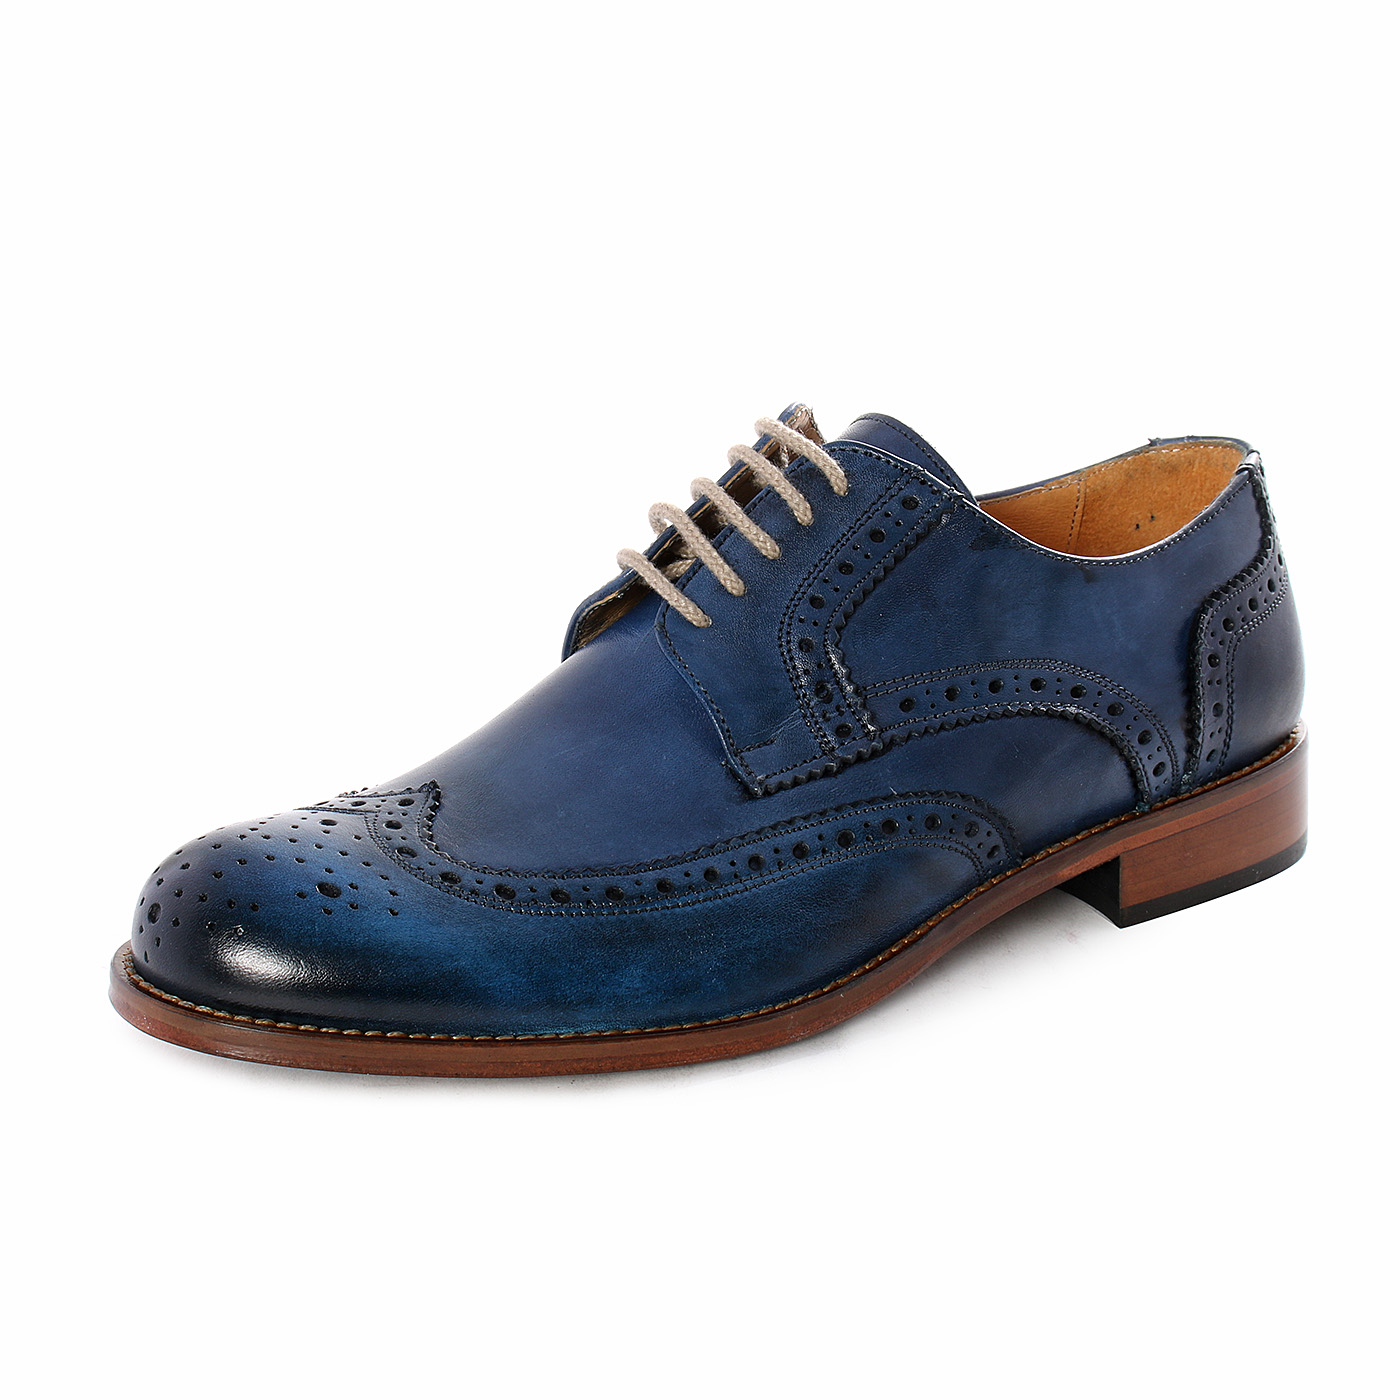 DADA - Scarpe eleganti stringate da uomo in vera pelle con decori - Blu -  MitShopping - Abbigliamento e scarpe